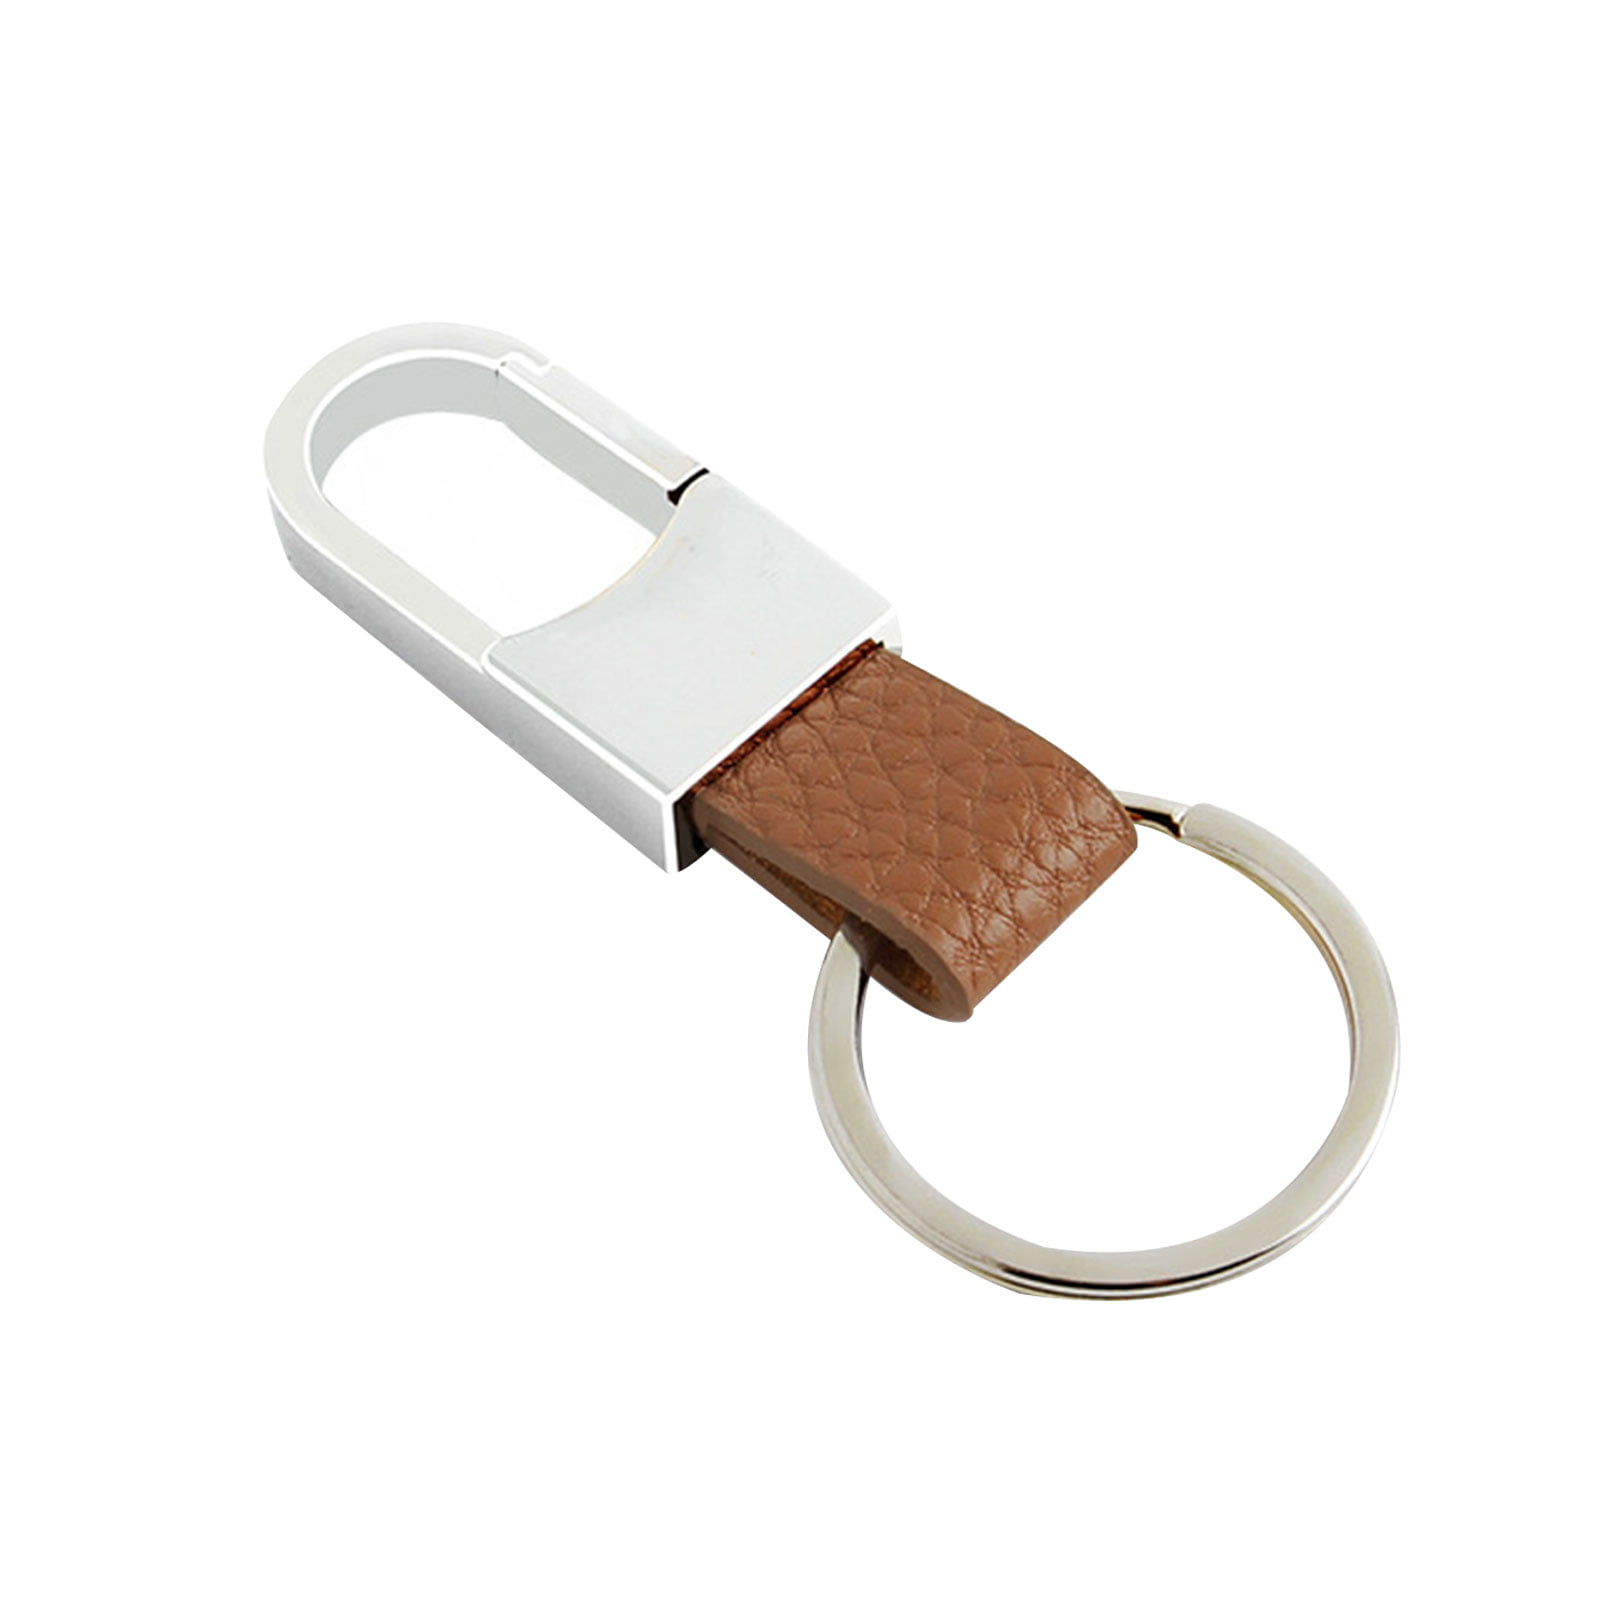 MAGMUS - Portable Magnetic key ring holder by Rintik — Kickstarter